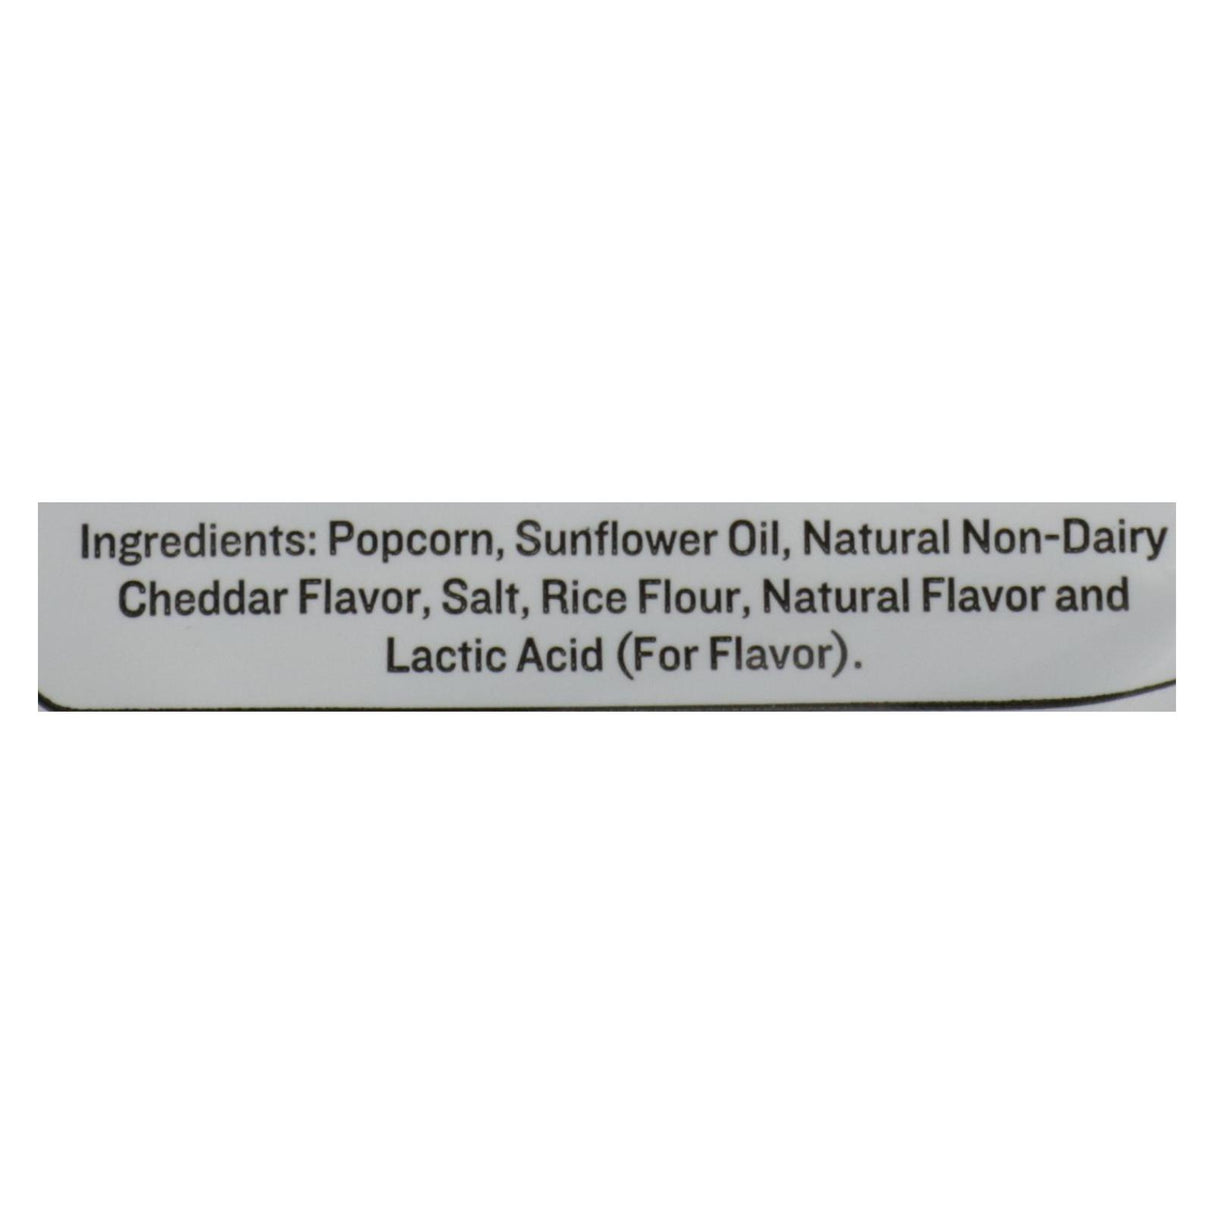 Skinnypop White Cheddar Flavored Popcorn - 1 oz - Cozy Farm 